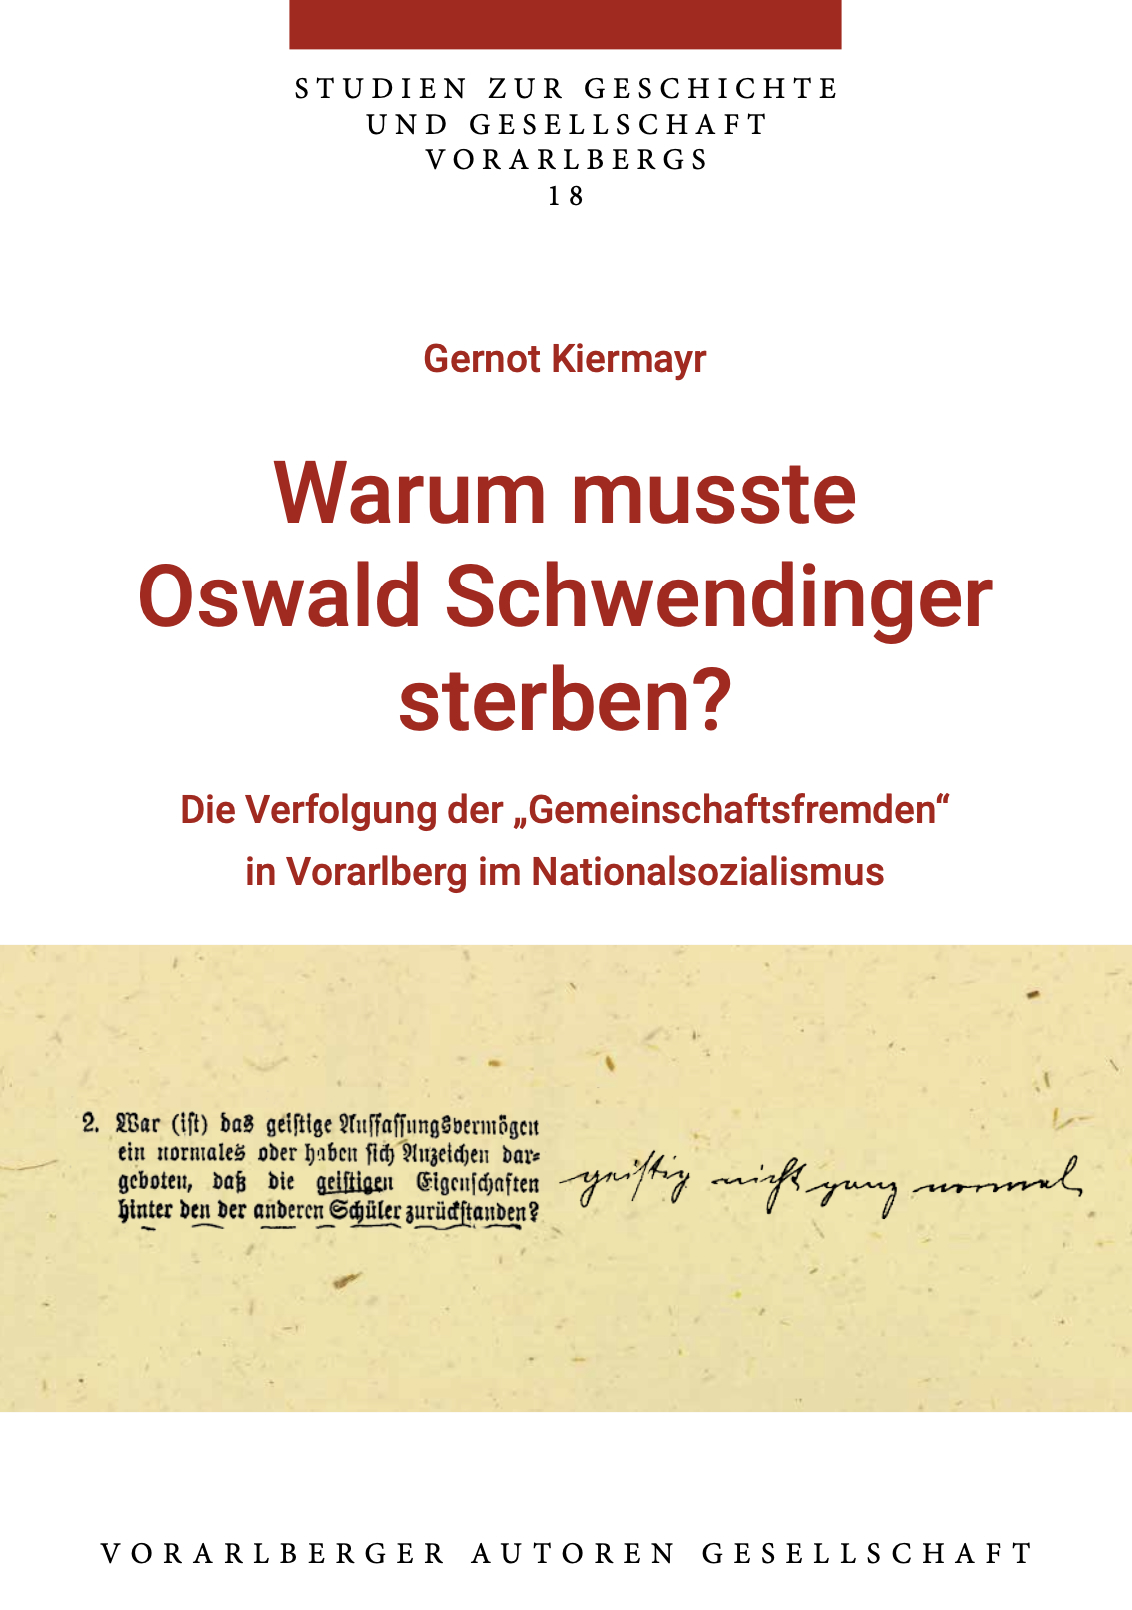 Studien zur Geschichte und Gesellschaft Vorarlbergs, Bd. 18, Hg: Vorarlberger Autoren Gesellschaft, Bregenz 2023. (Quelle: Vorarlberger Autoren Gesellschaft)